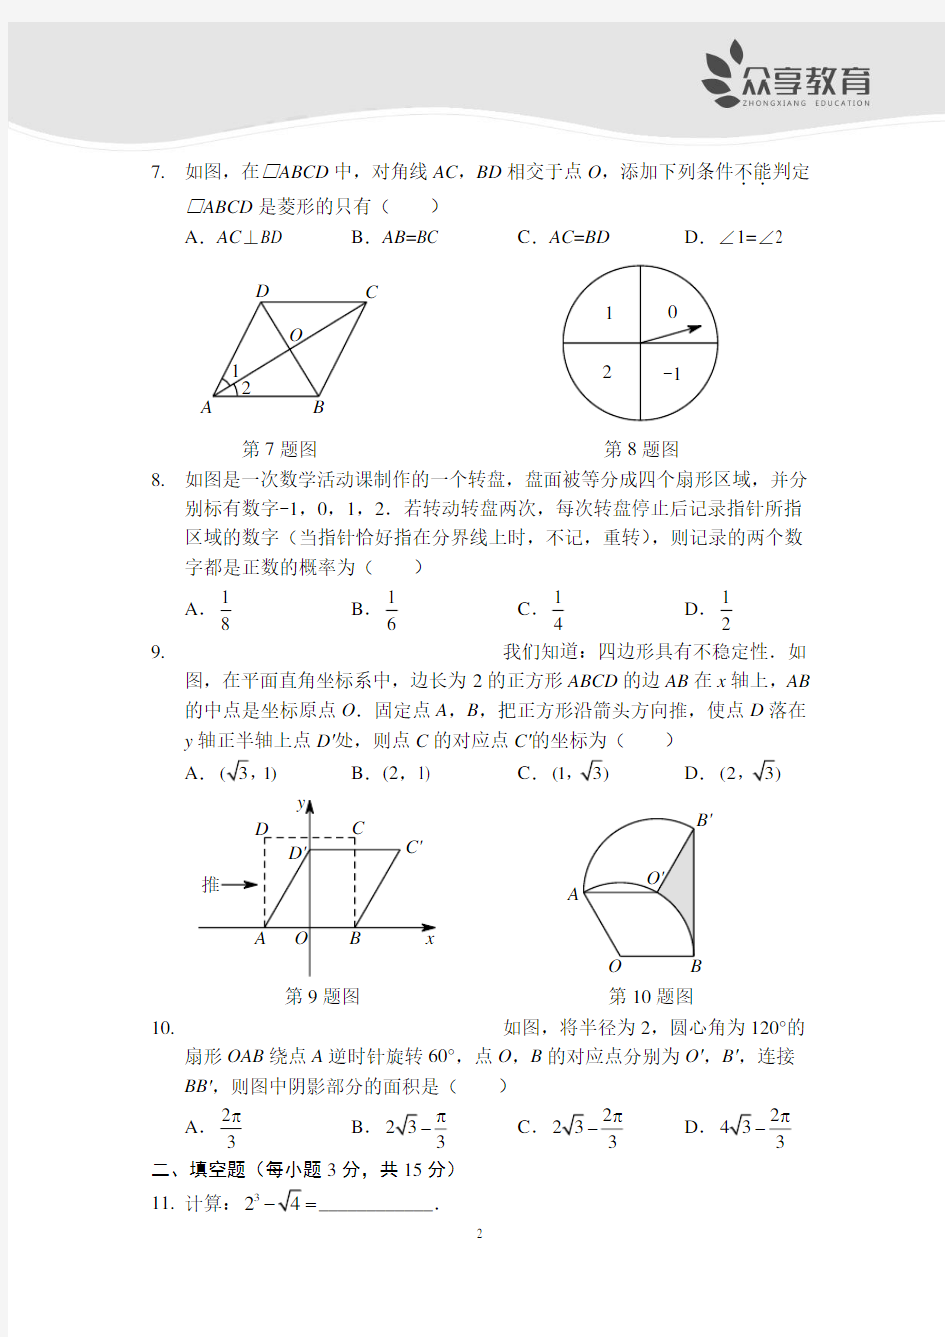 2017河南省普通高中招生考试试卷(数学)及答案 (1)